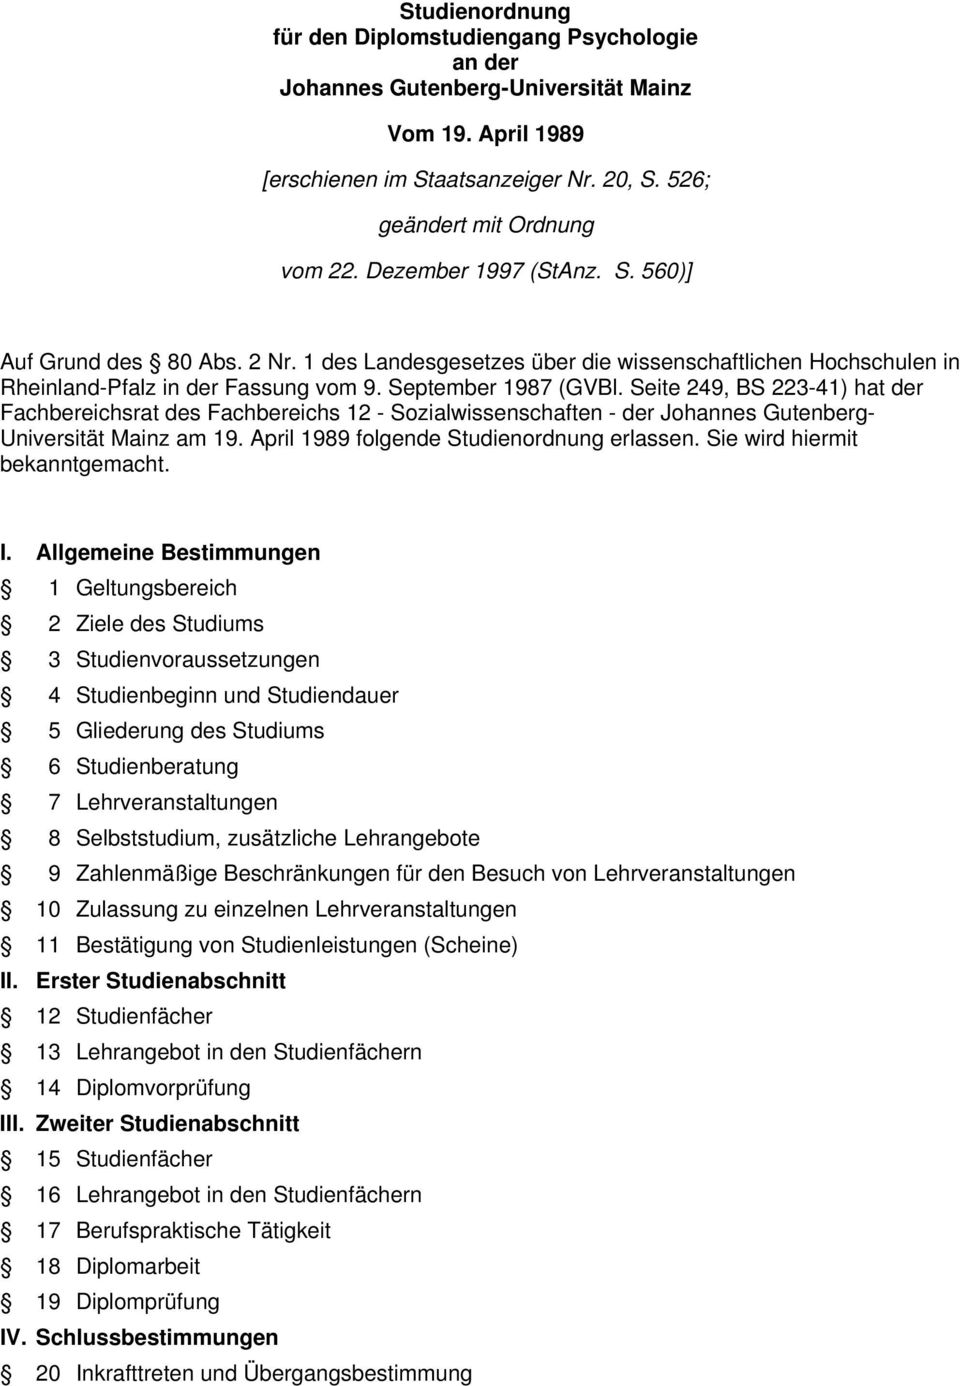 eite 49, B 3-4) hat der Fachbereichsrat des Fachbereichs - ozialwissenschaften - der Johannes Gutenberg- Universität Mainz am 9. April 989 folgende tudienordnung erlassen.